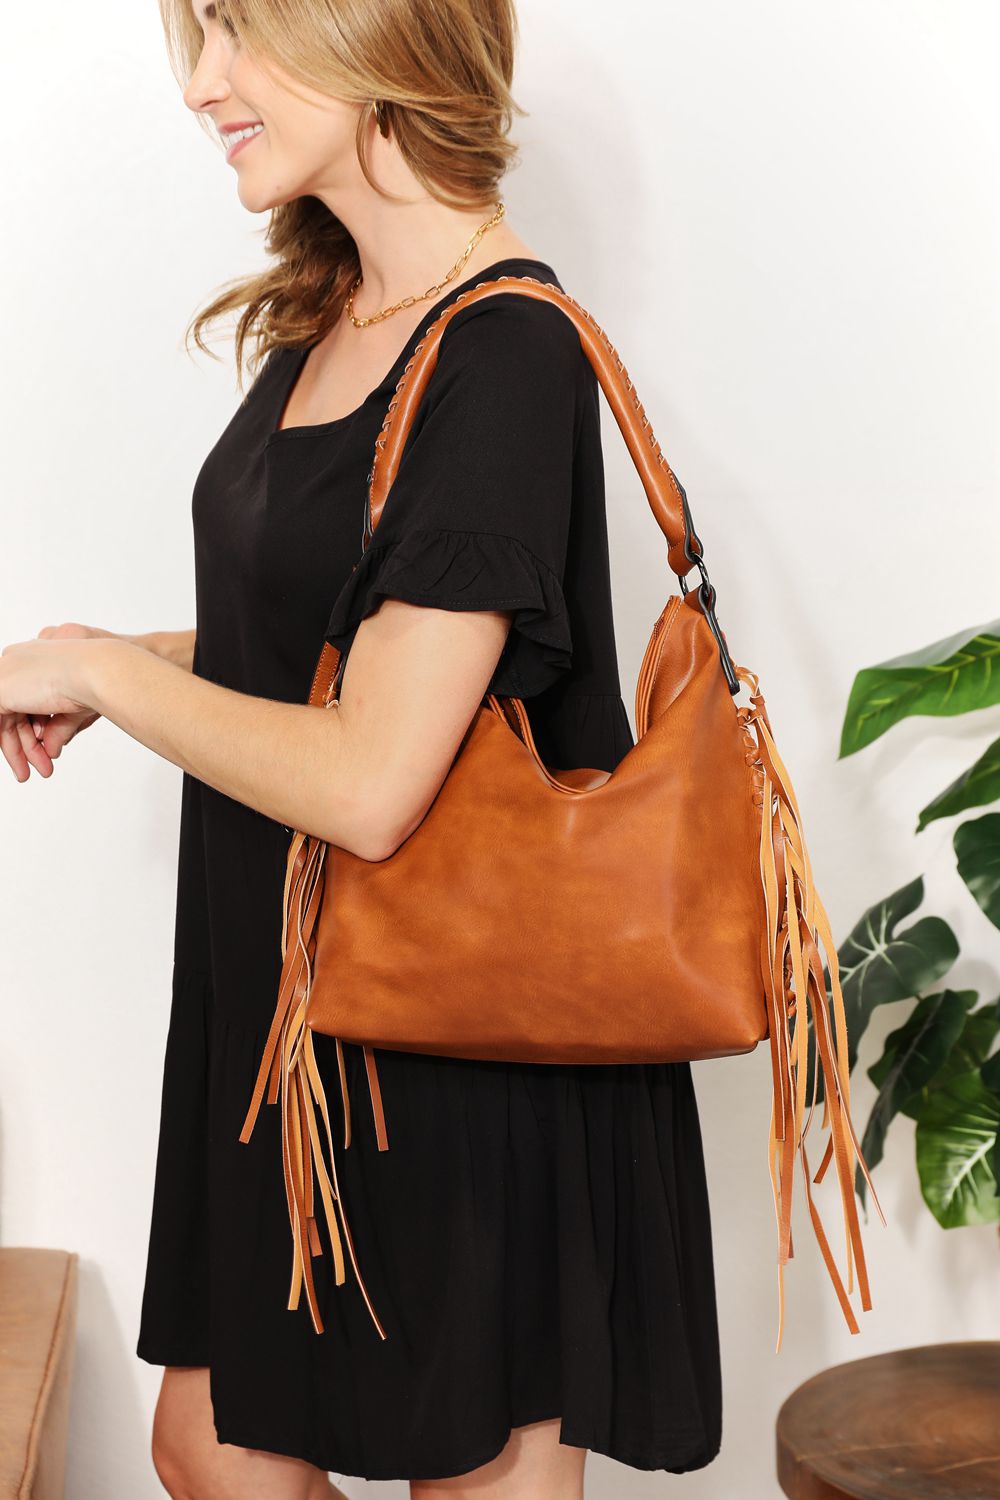 SHOMICO PU Leather Fringe Detail Shoulder Bag Caramel One Size